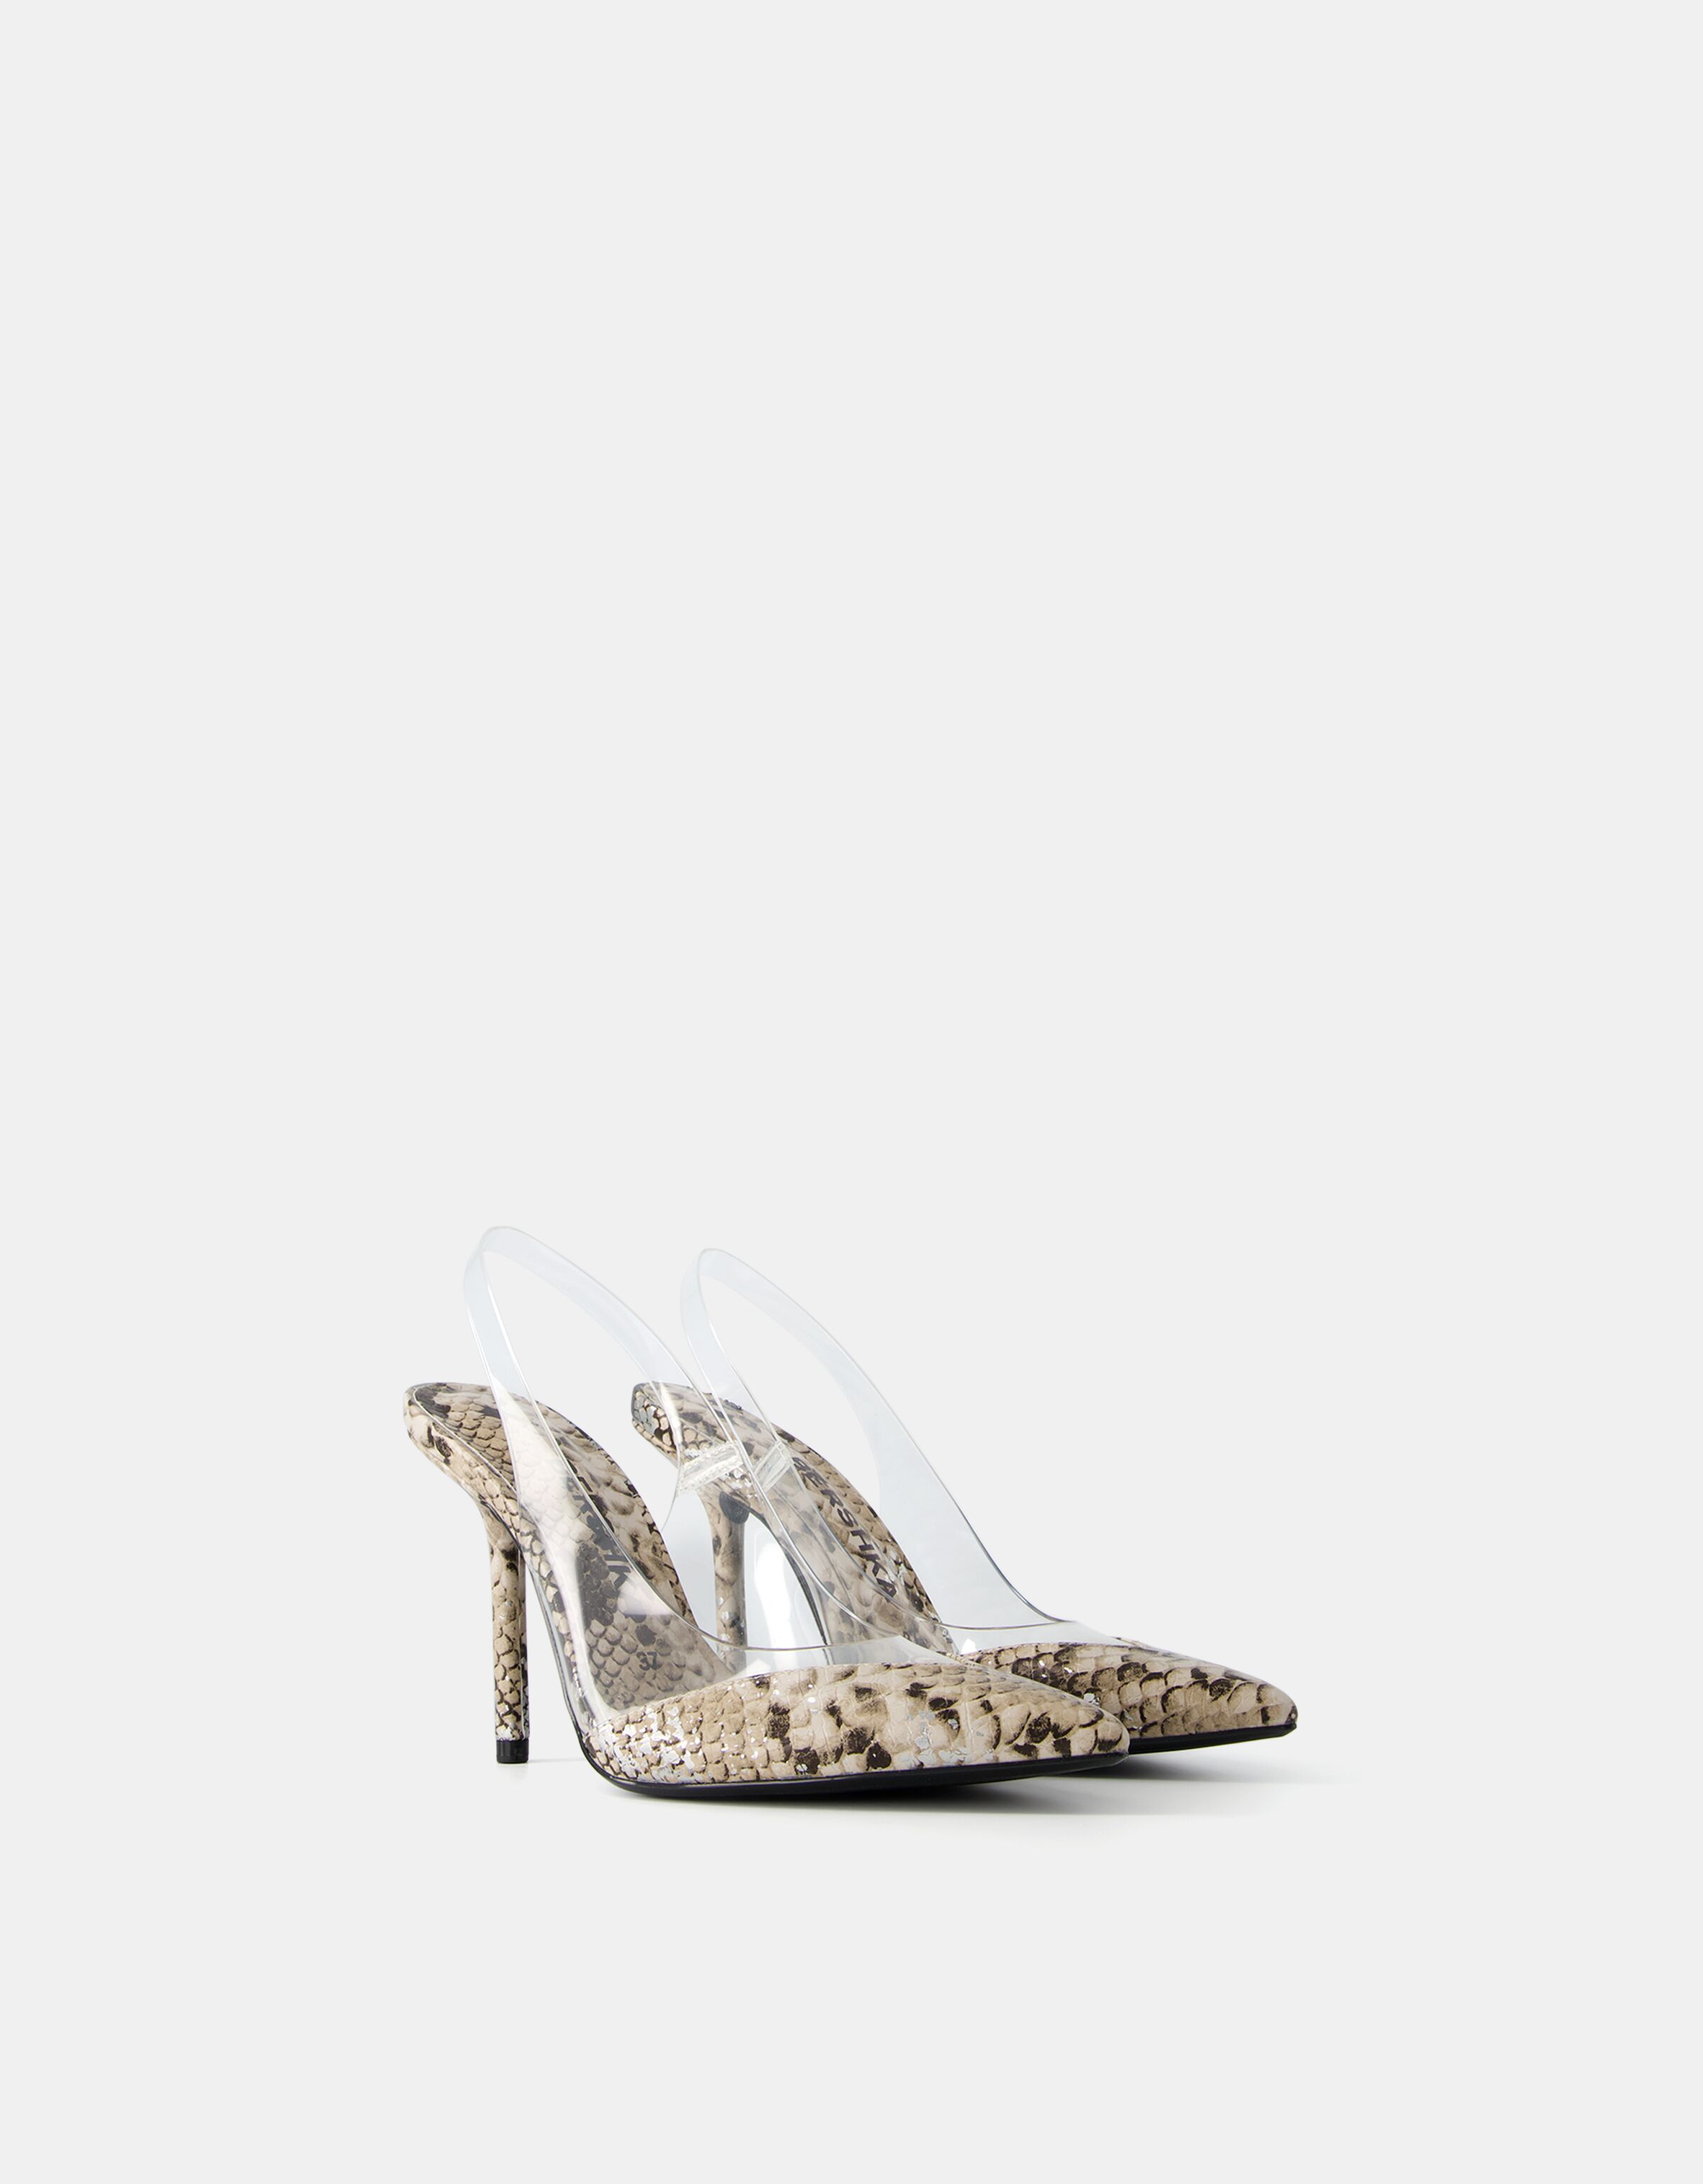 Diane Von Furstenberg Platform High Heels Cow Hair Hide Animal Print Size 7  1/2 | Heels, Platform high heels, Kitten heels